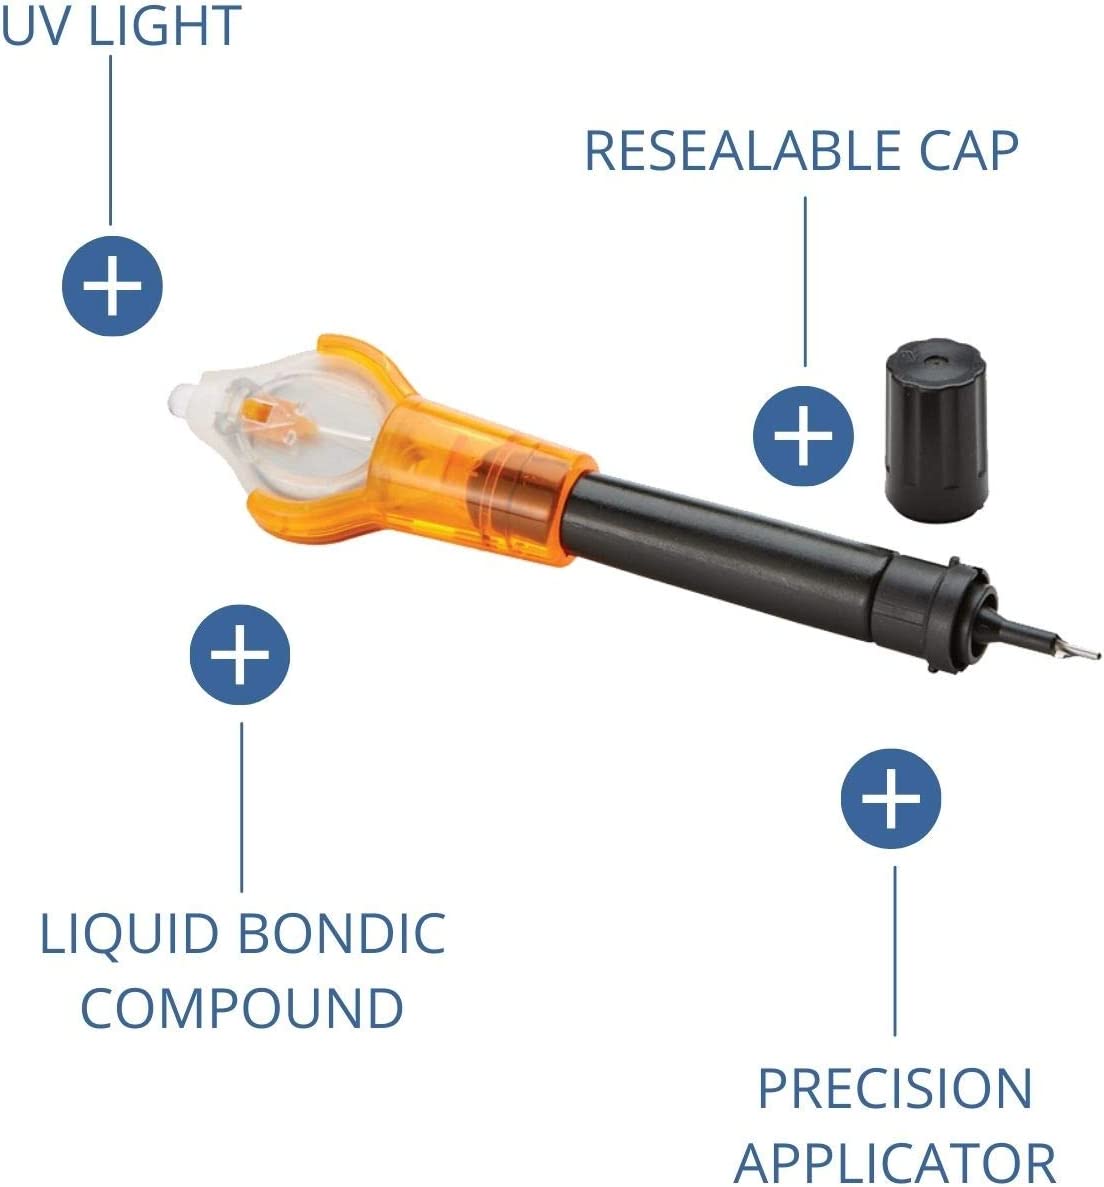 Bondic SK001 Liquid Plastic Welder Kit with 4 Gram Tube